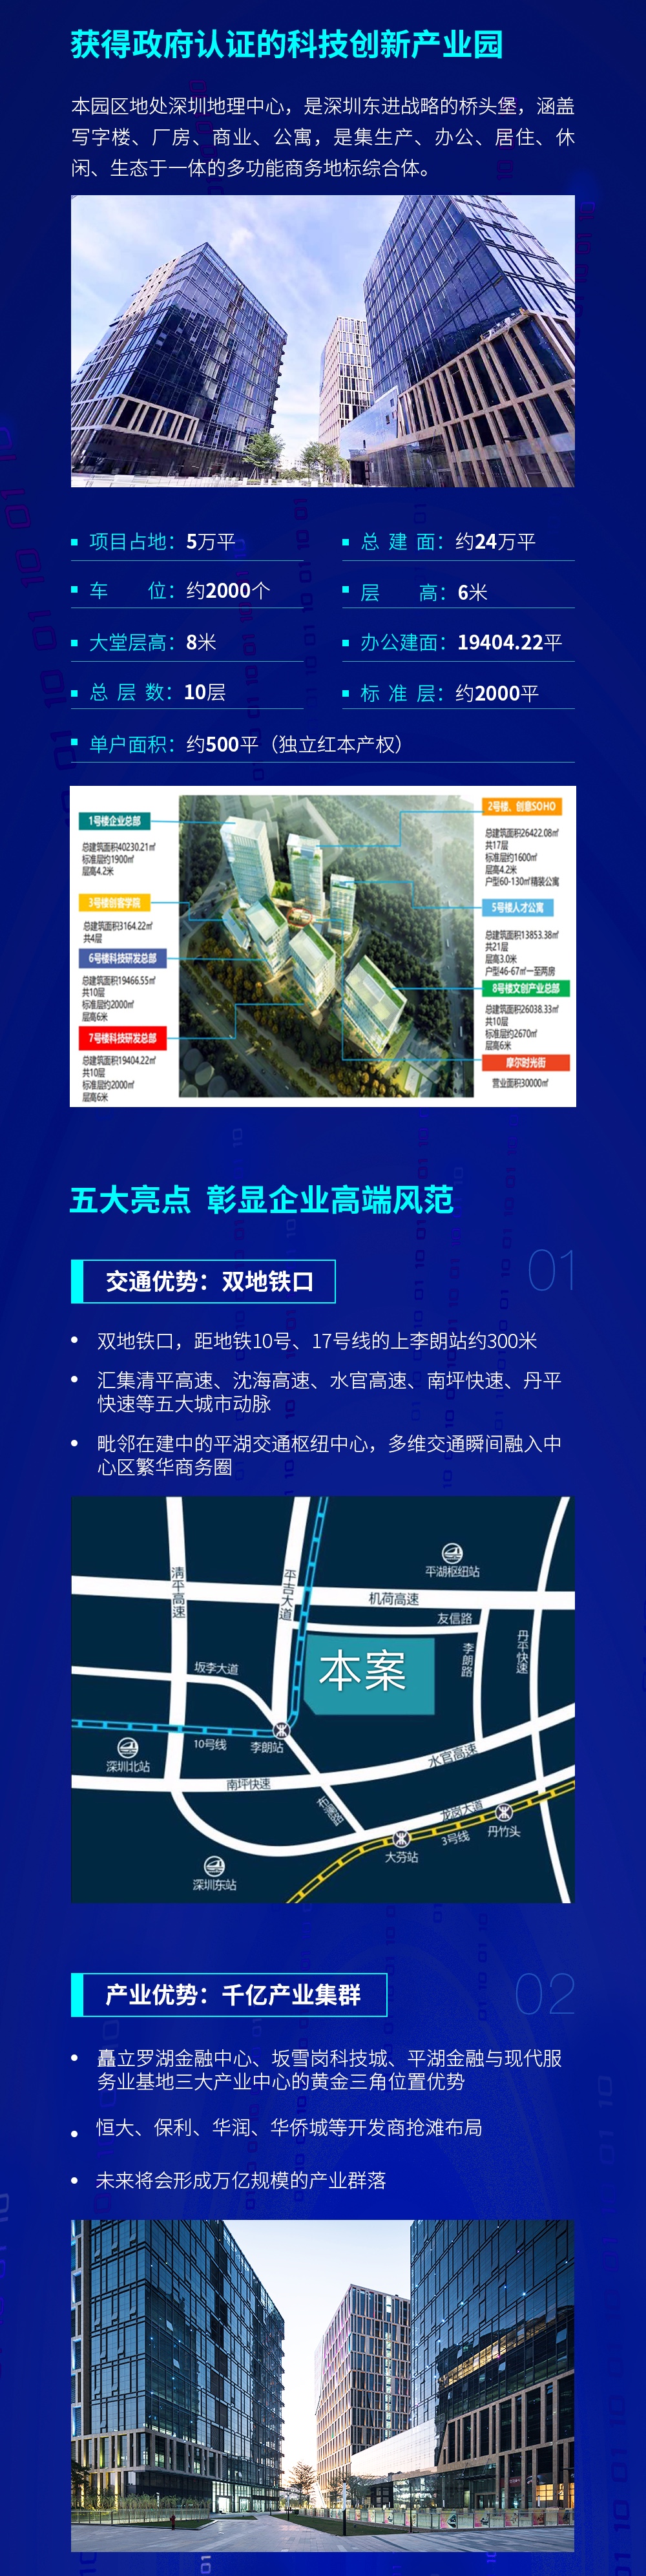 深圳龙岗电商产业园图片2